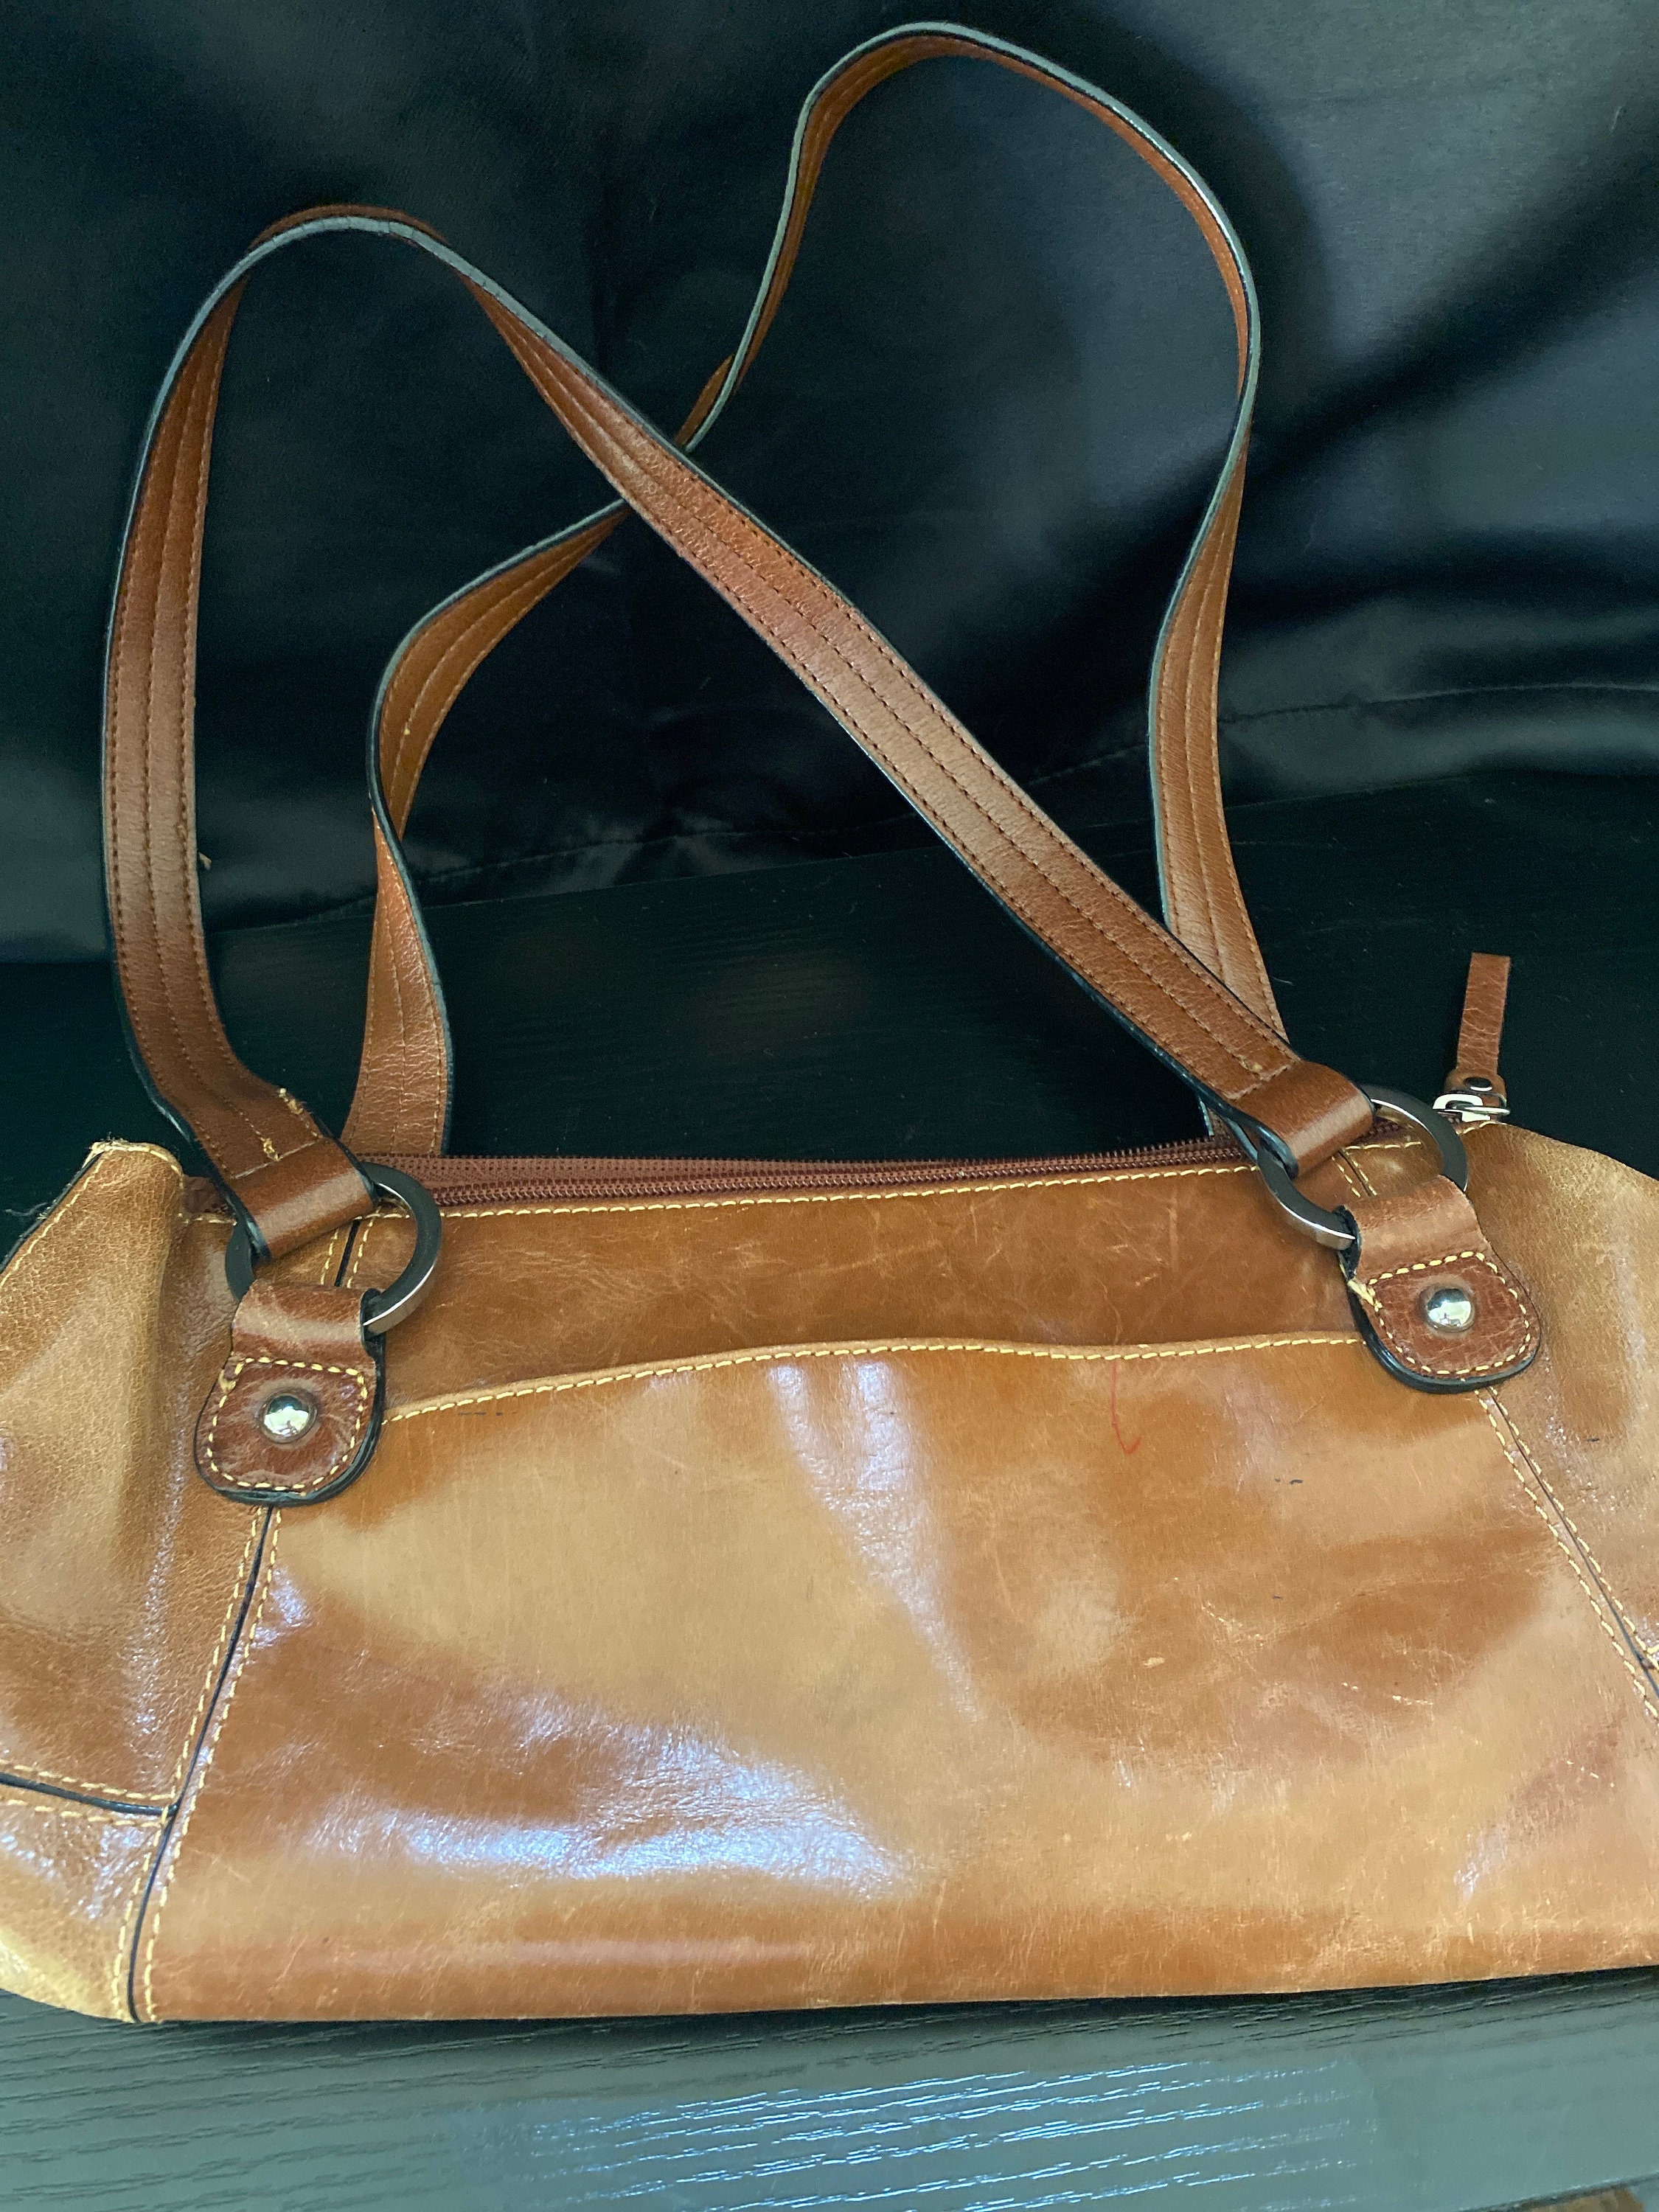 Giani Bernini Shoulder bags for Women